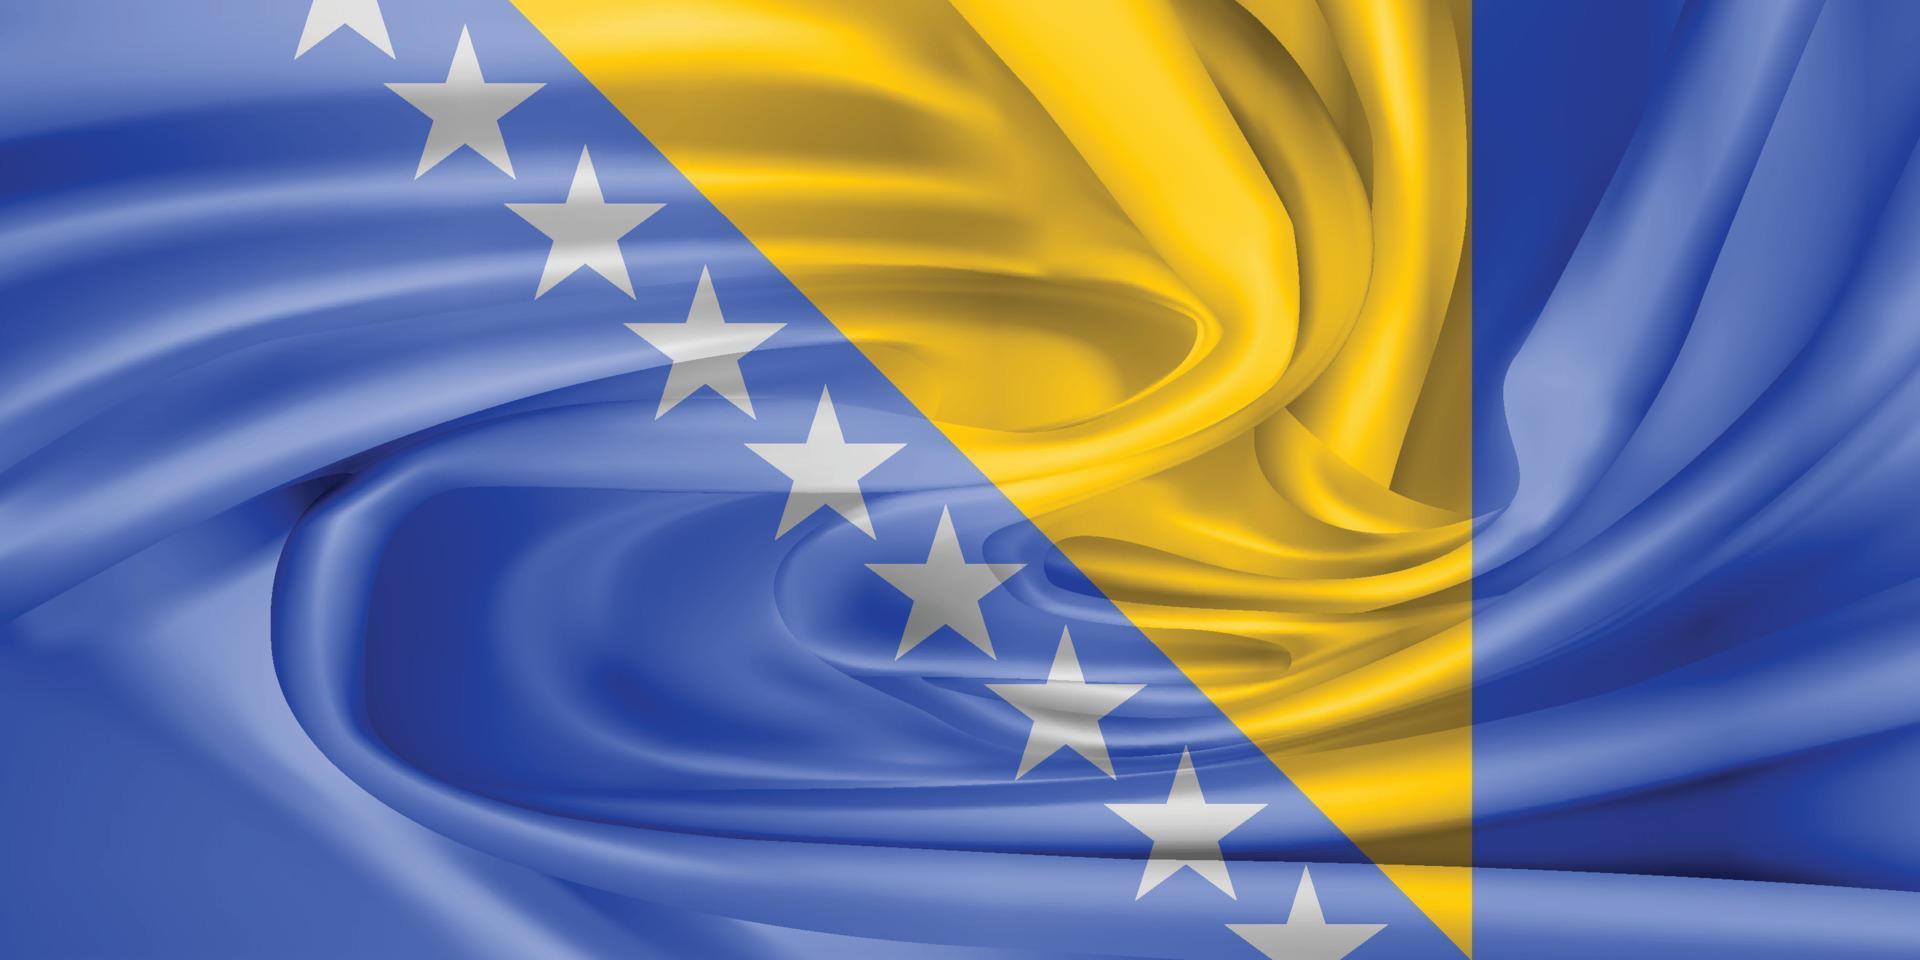 la bandiera nazionale della bosnia ed erzegovina. il simbolo dello stato su tessuto di cotone ondulato. illustrazione vettoriale realistico.sfondo di bandiera con trama di stoffa